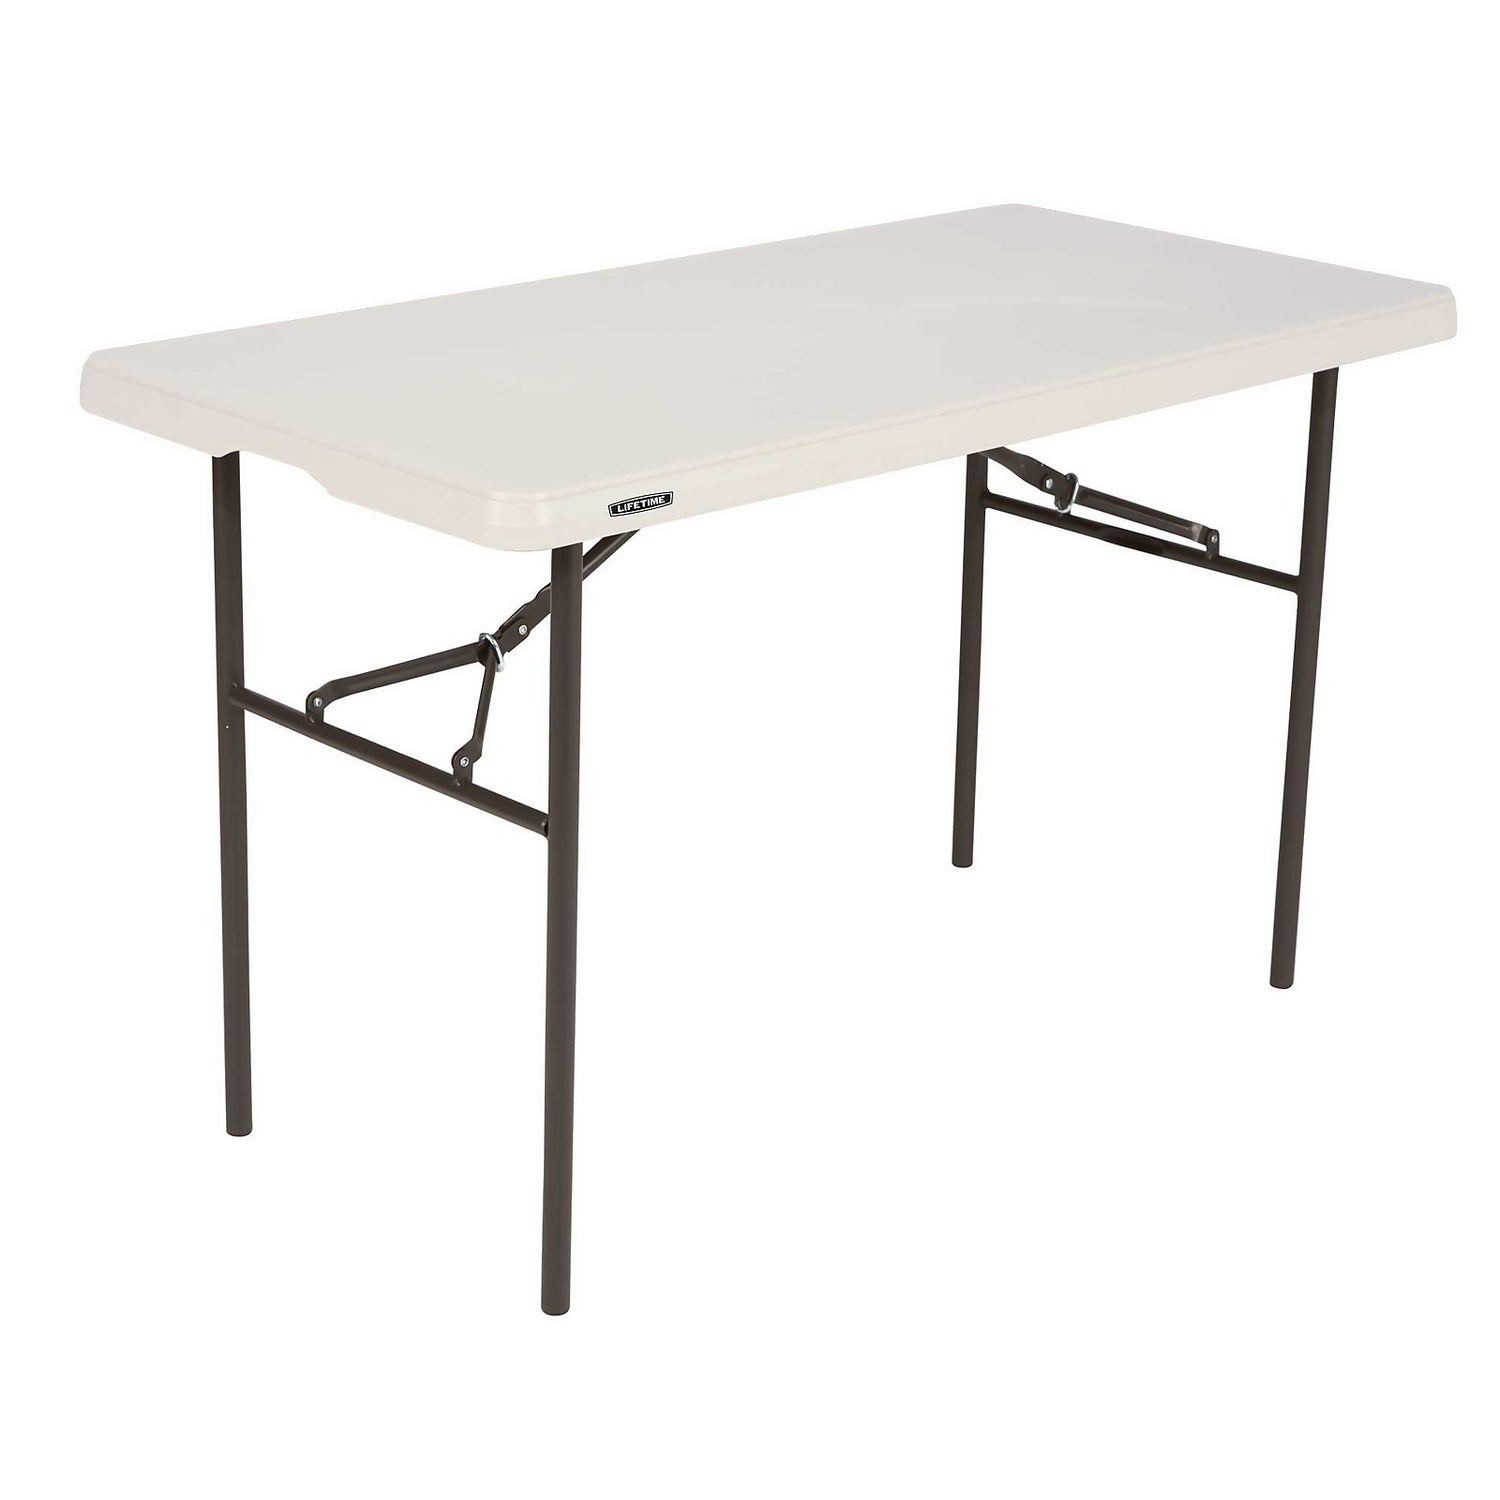 Lifetime Blow Mould Folding Table 183cm